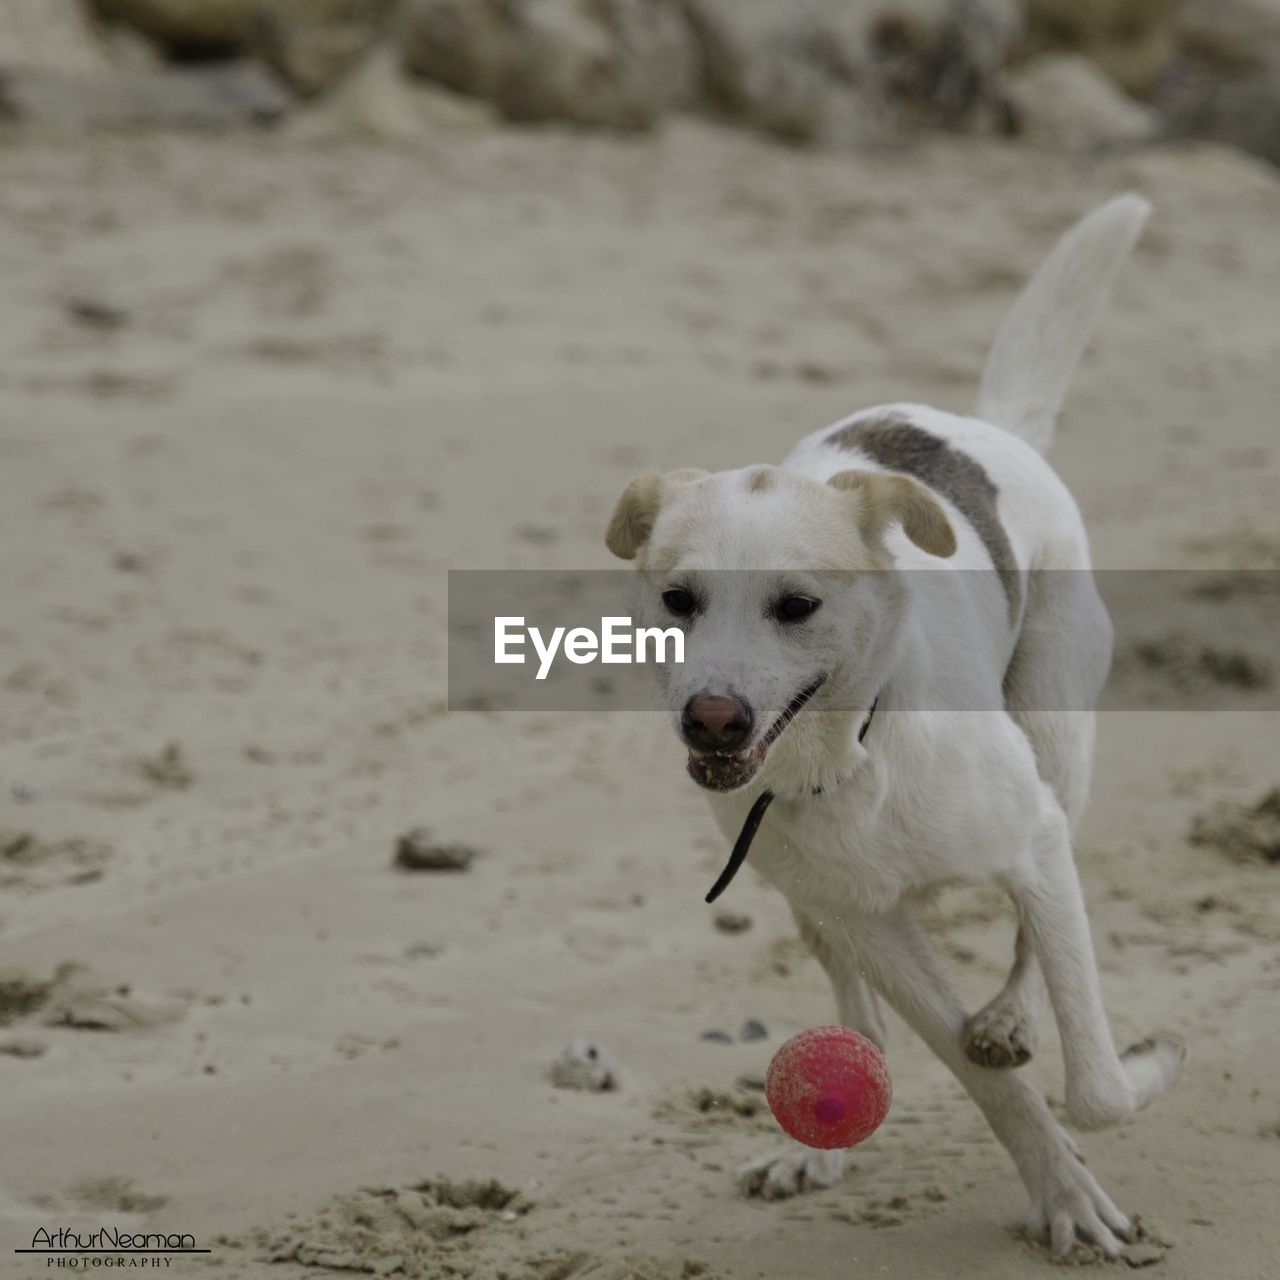 Dog playing with ball on sand